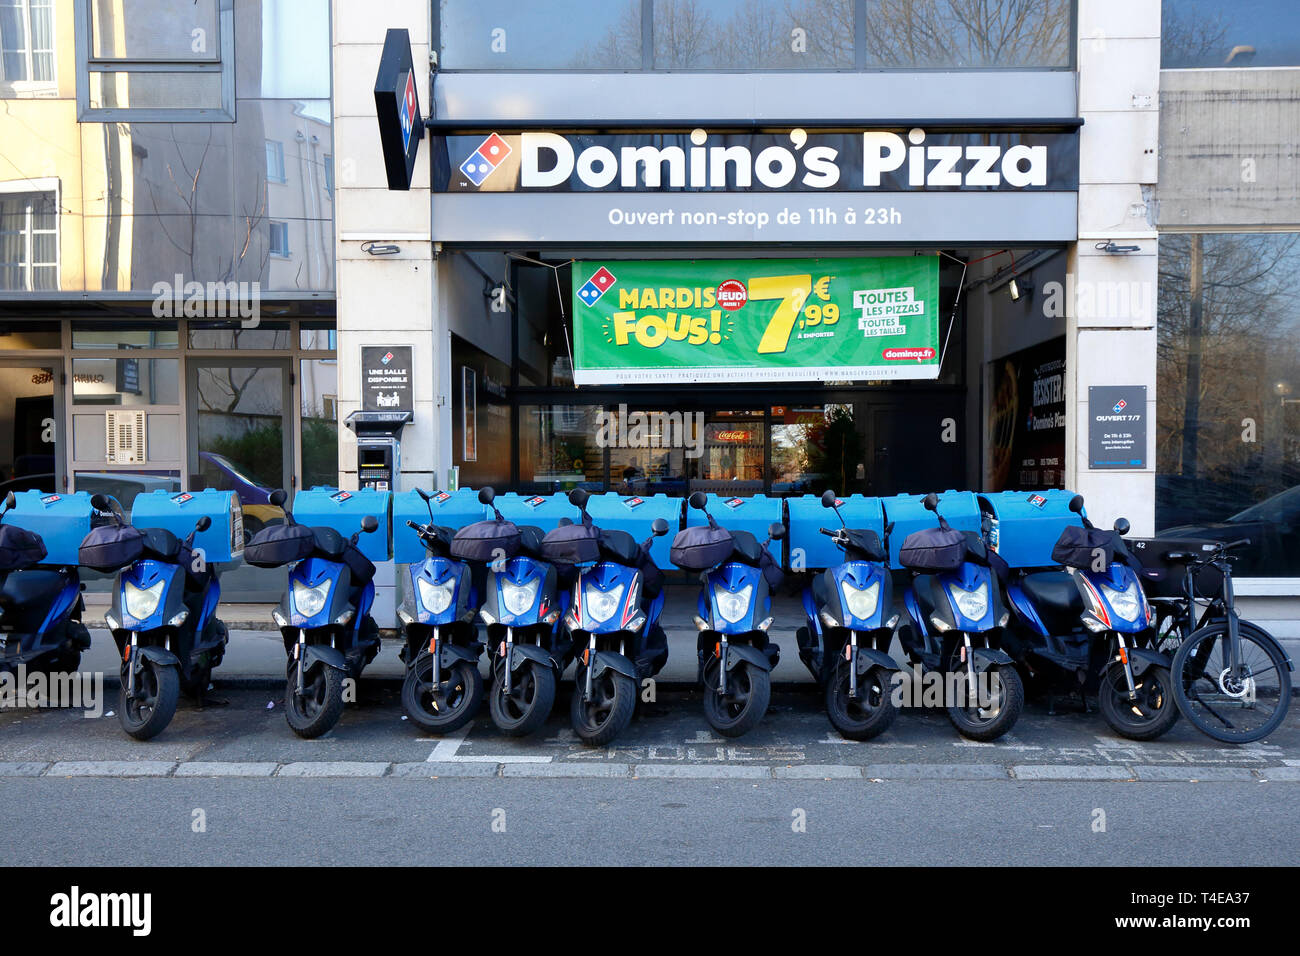 Domino's Pizza, 7 rue de Margnolles, Caluire-et-Cuire, Lyon, France.  Extérieur d'une pizzeria avec de nombreux mobylettes de livraison de pizzas  à l'extérieur Photo Stock - Alamy